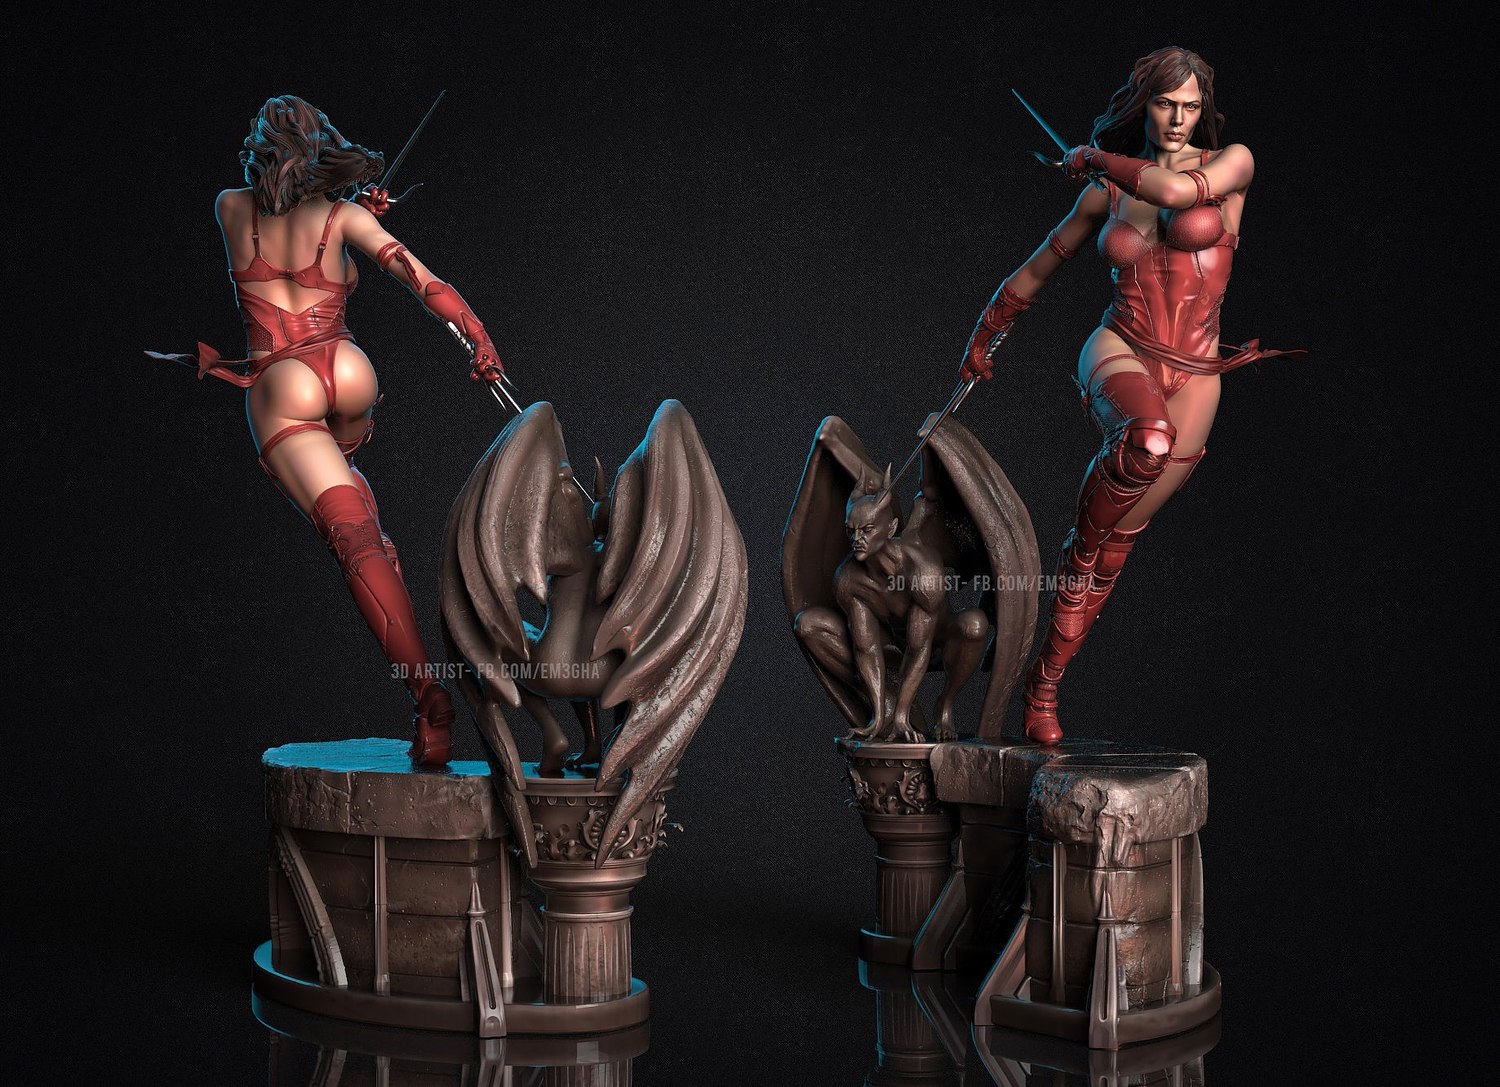 Elektra from Marvel